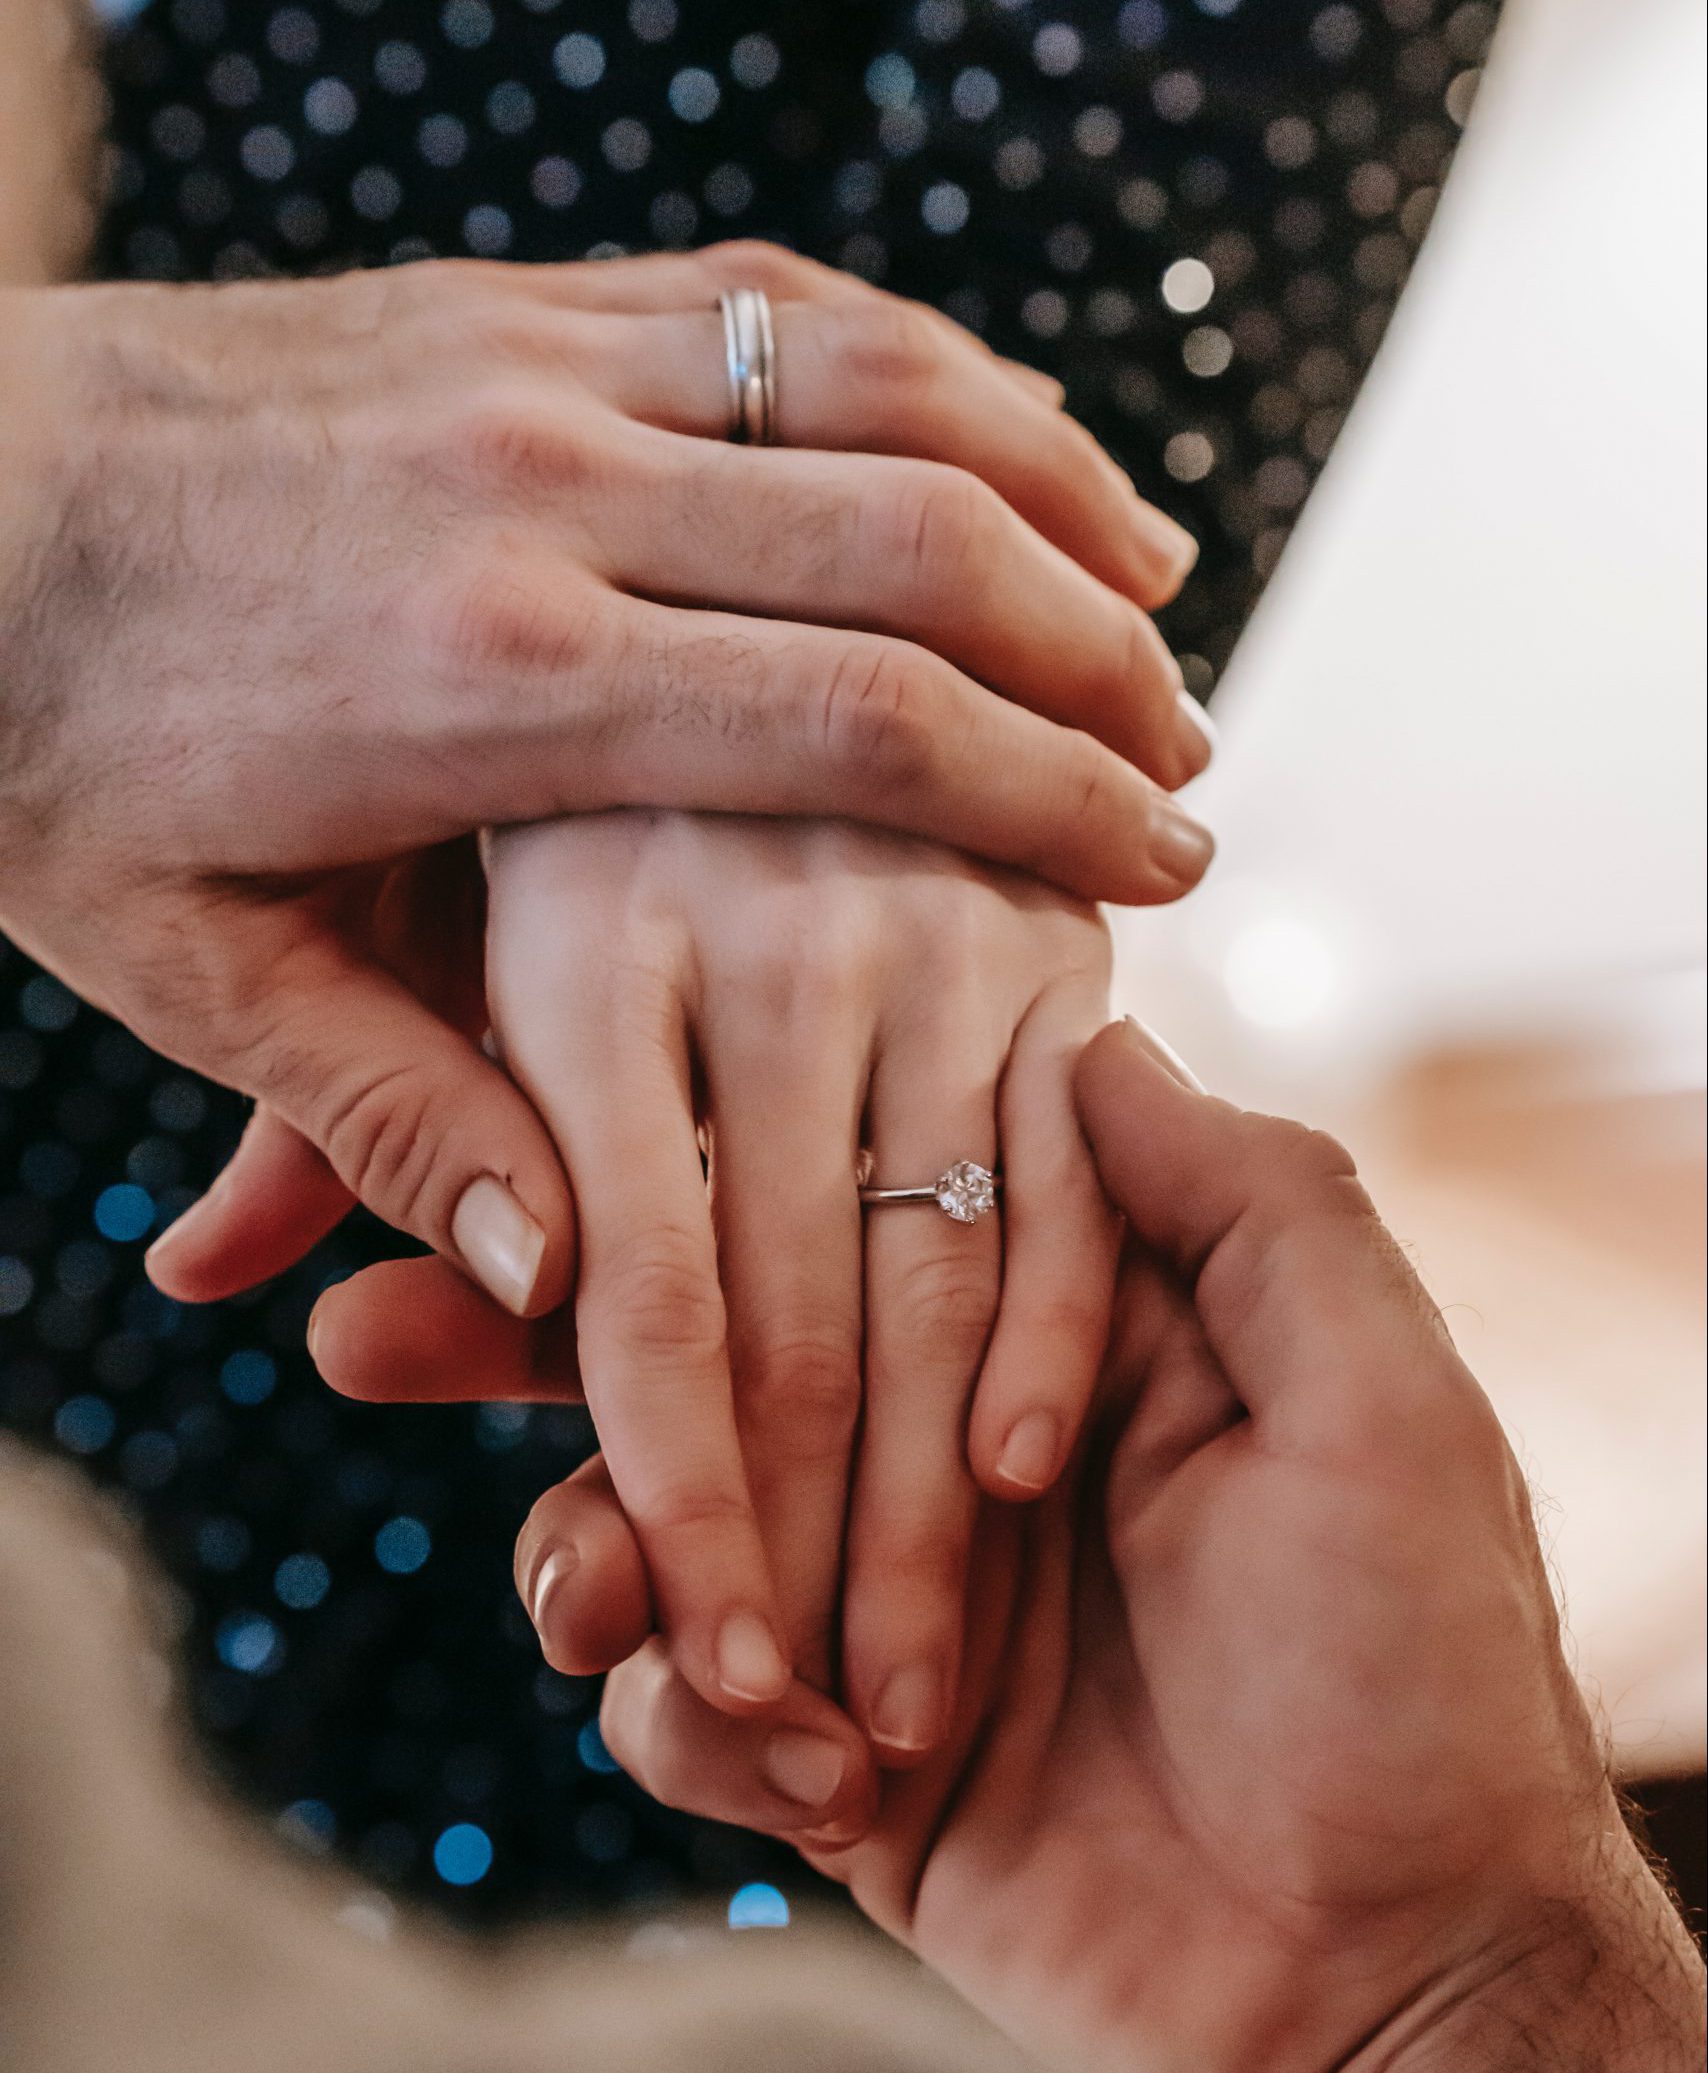 מה ההבדל בין טבעת אירוסין לטבעת נישואין